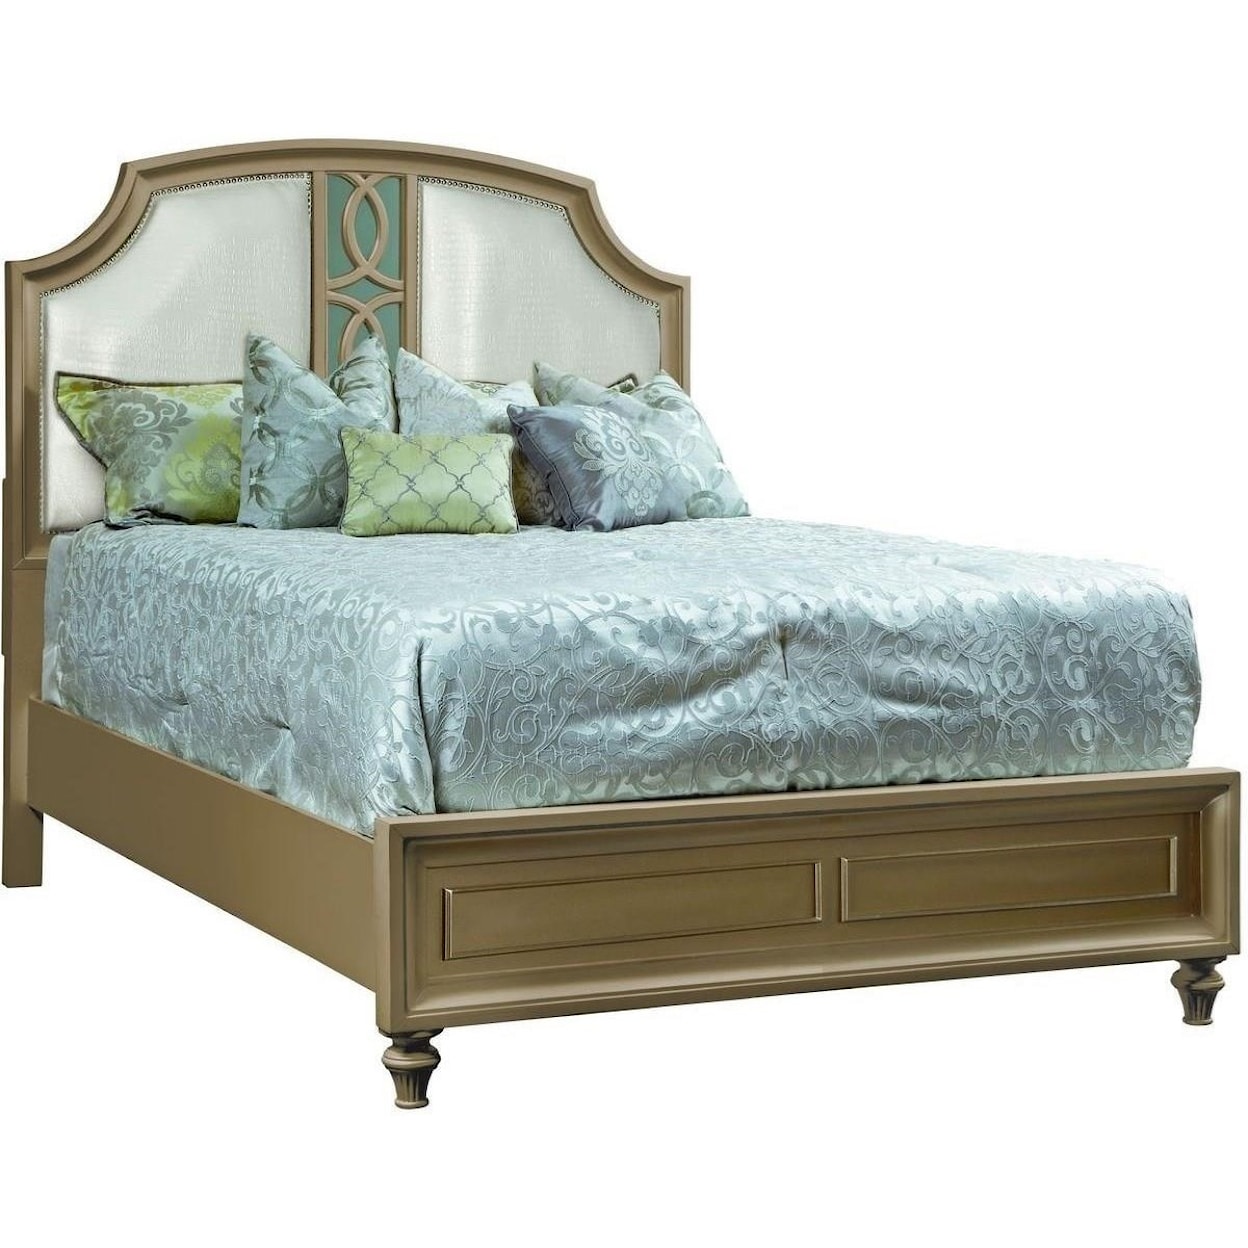 Avalon Furniture Regency Gold King Bed